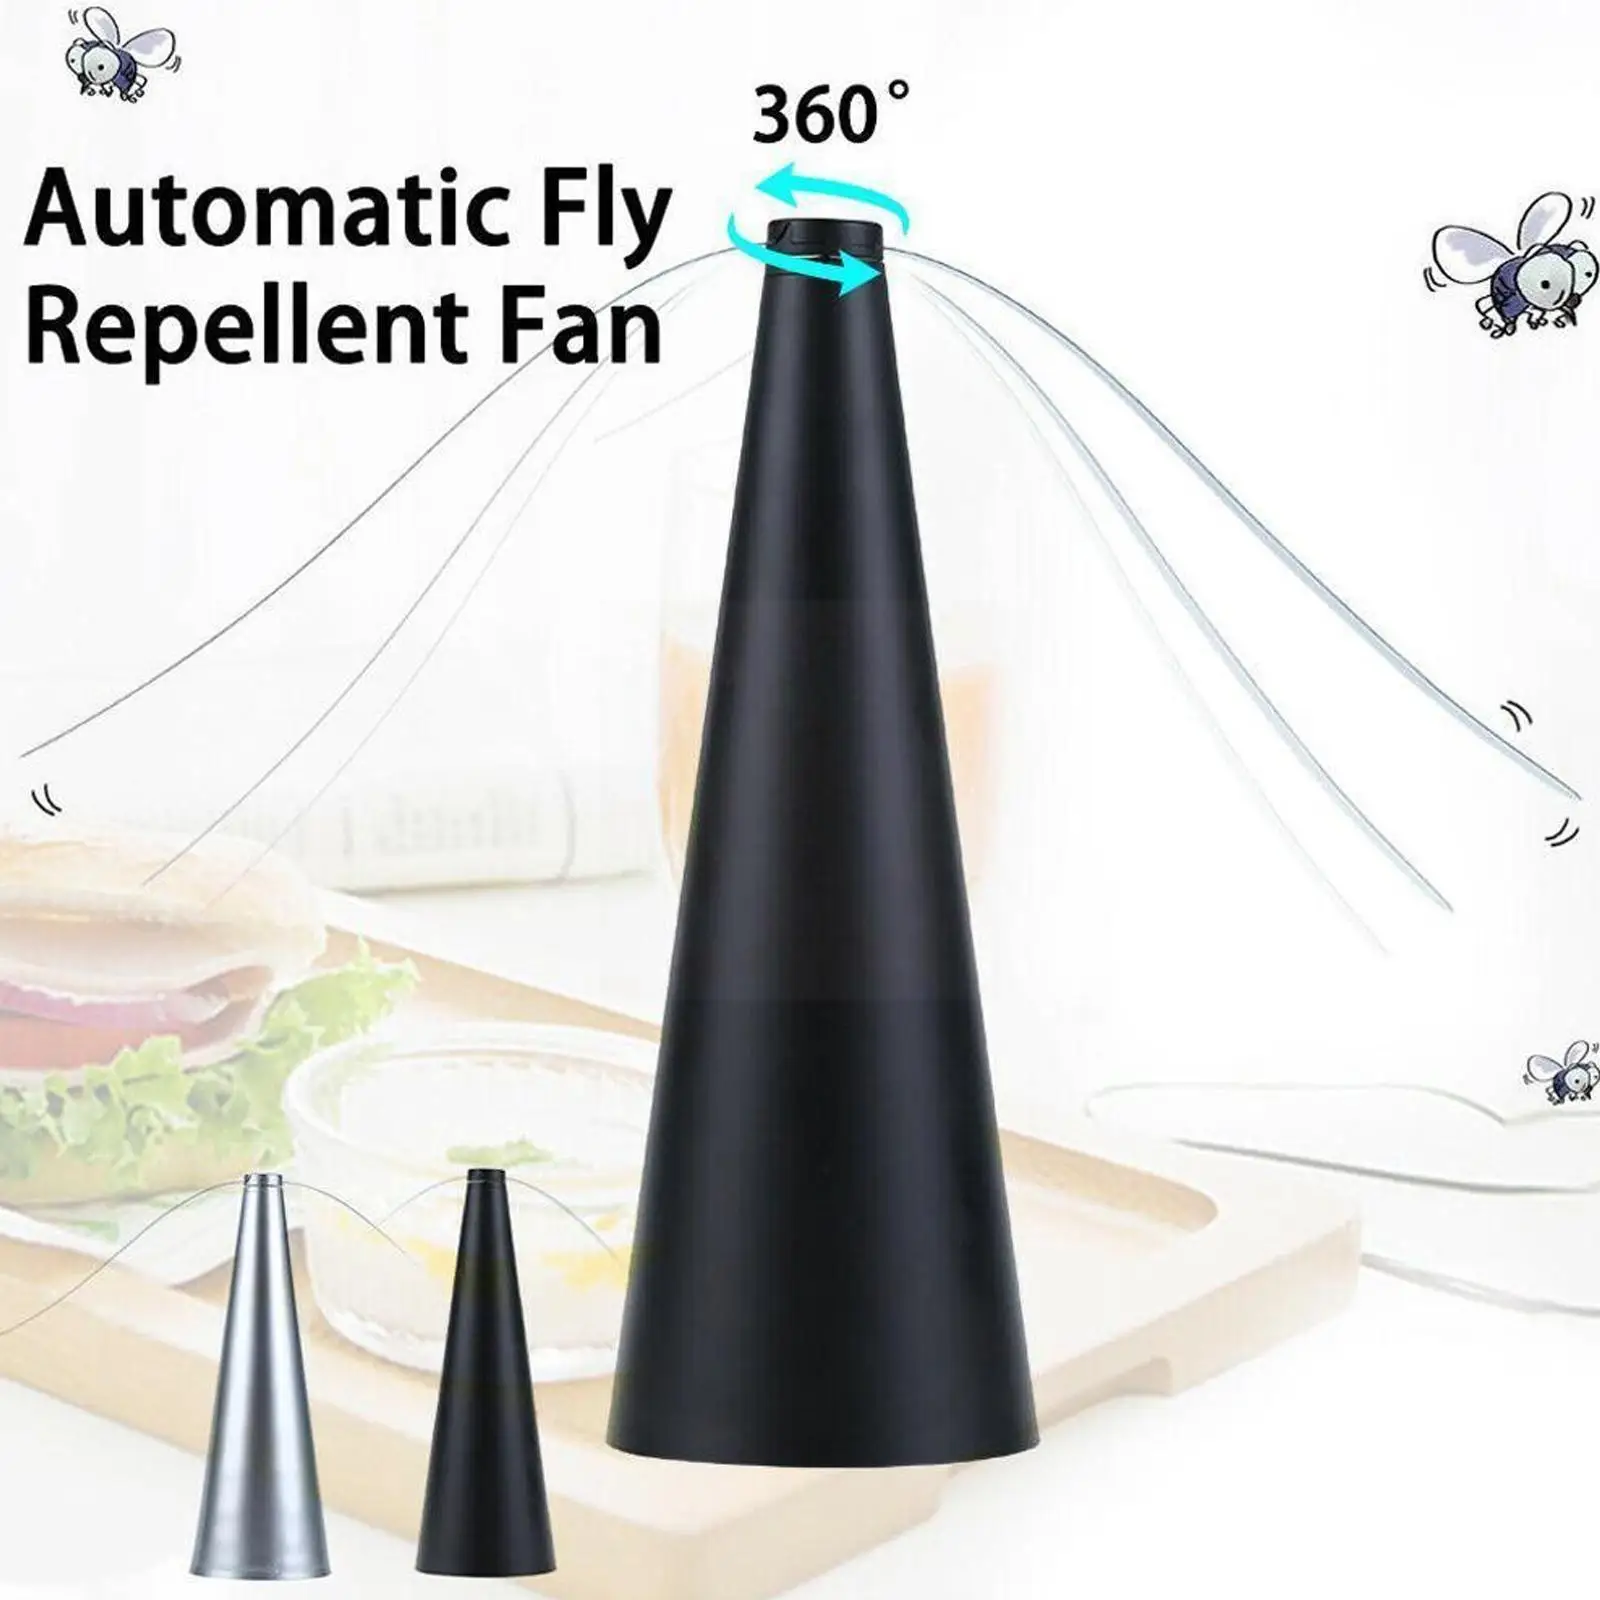 

Usb-вентилятор для наружной кухни, защита для еды, Разрушитель мух, защищает от насекомых, прибор для отпугивания вредителей, N4u9